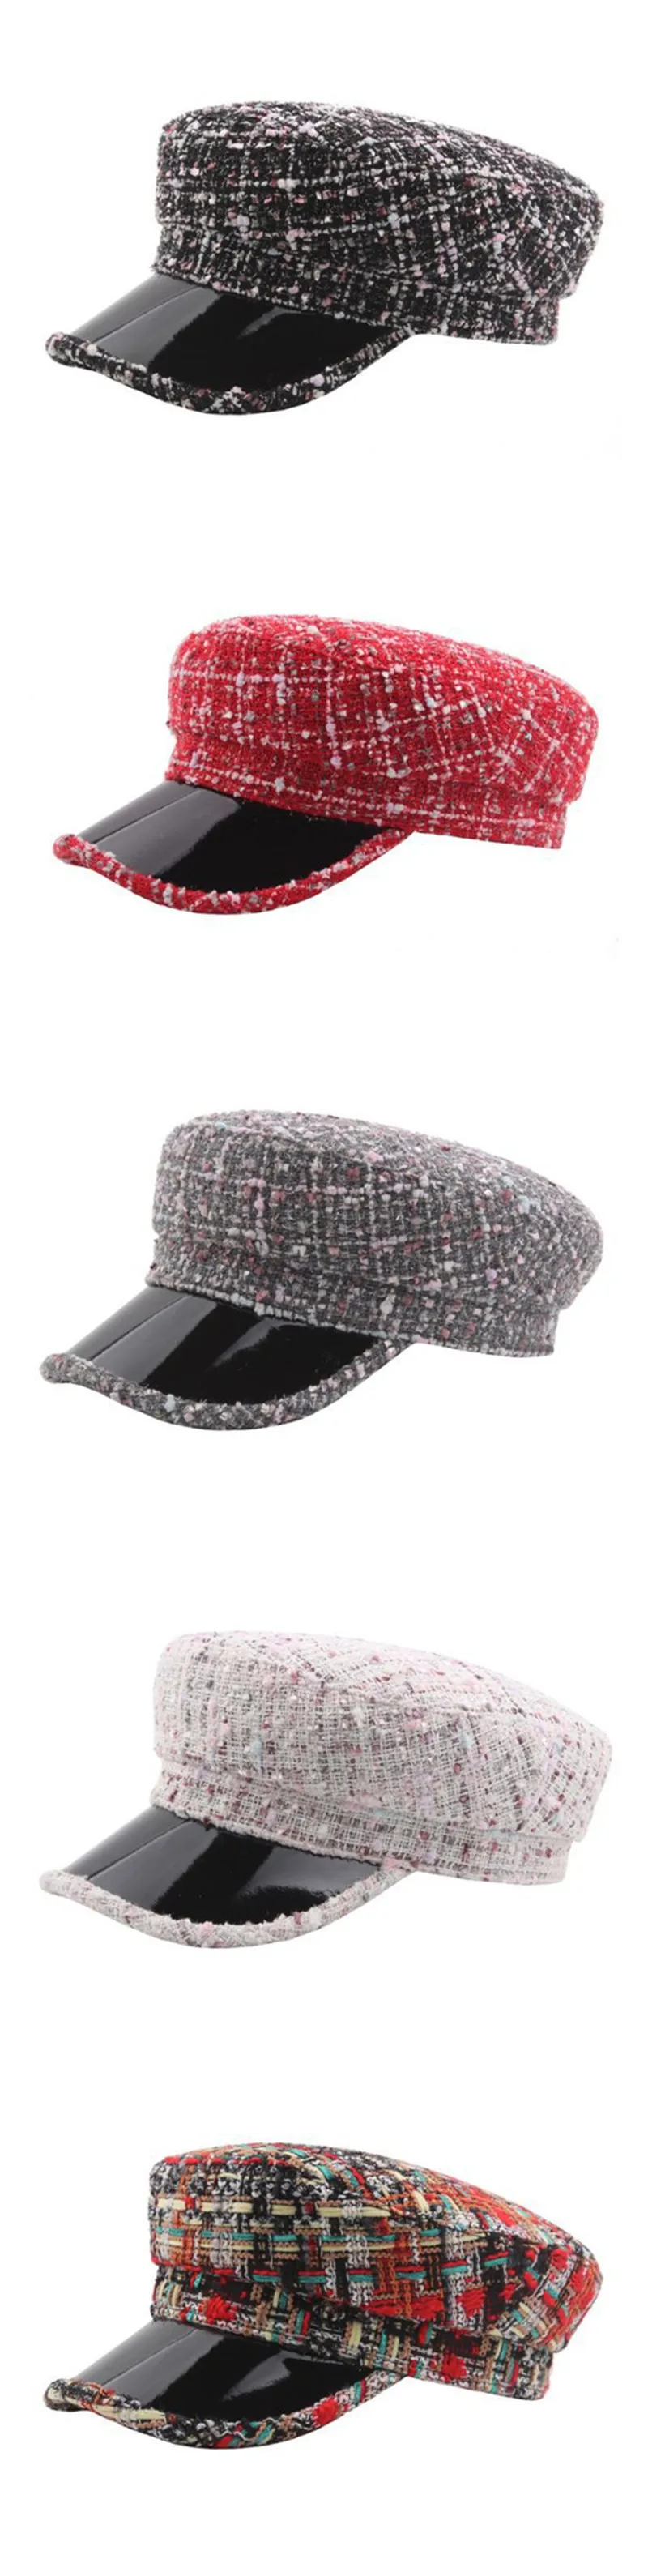 SILOQIN элегантные женские плоские кепки клетчатые армейские военные шапки для женщин зимние теплые толстые хлопковые модные яркие шелковые кепки в стиле хип-хоп